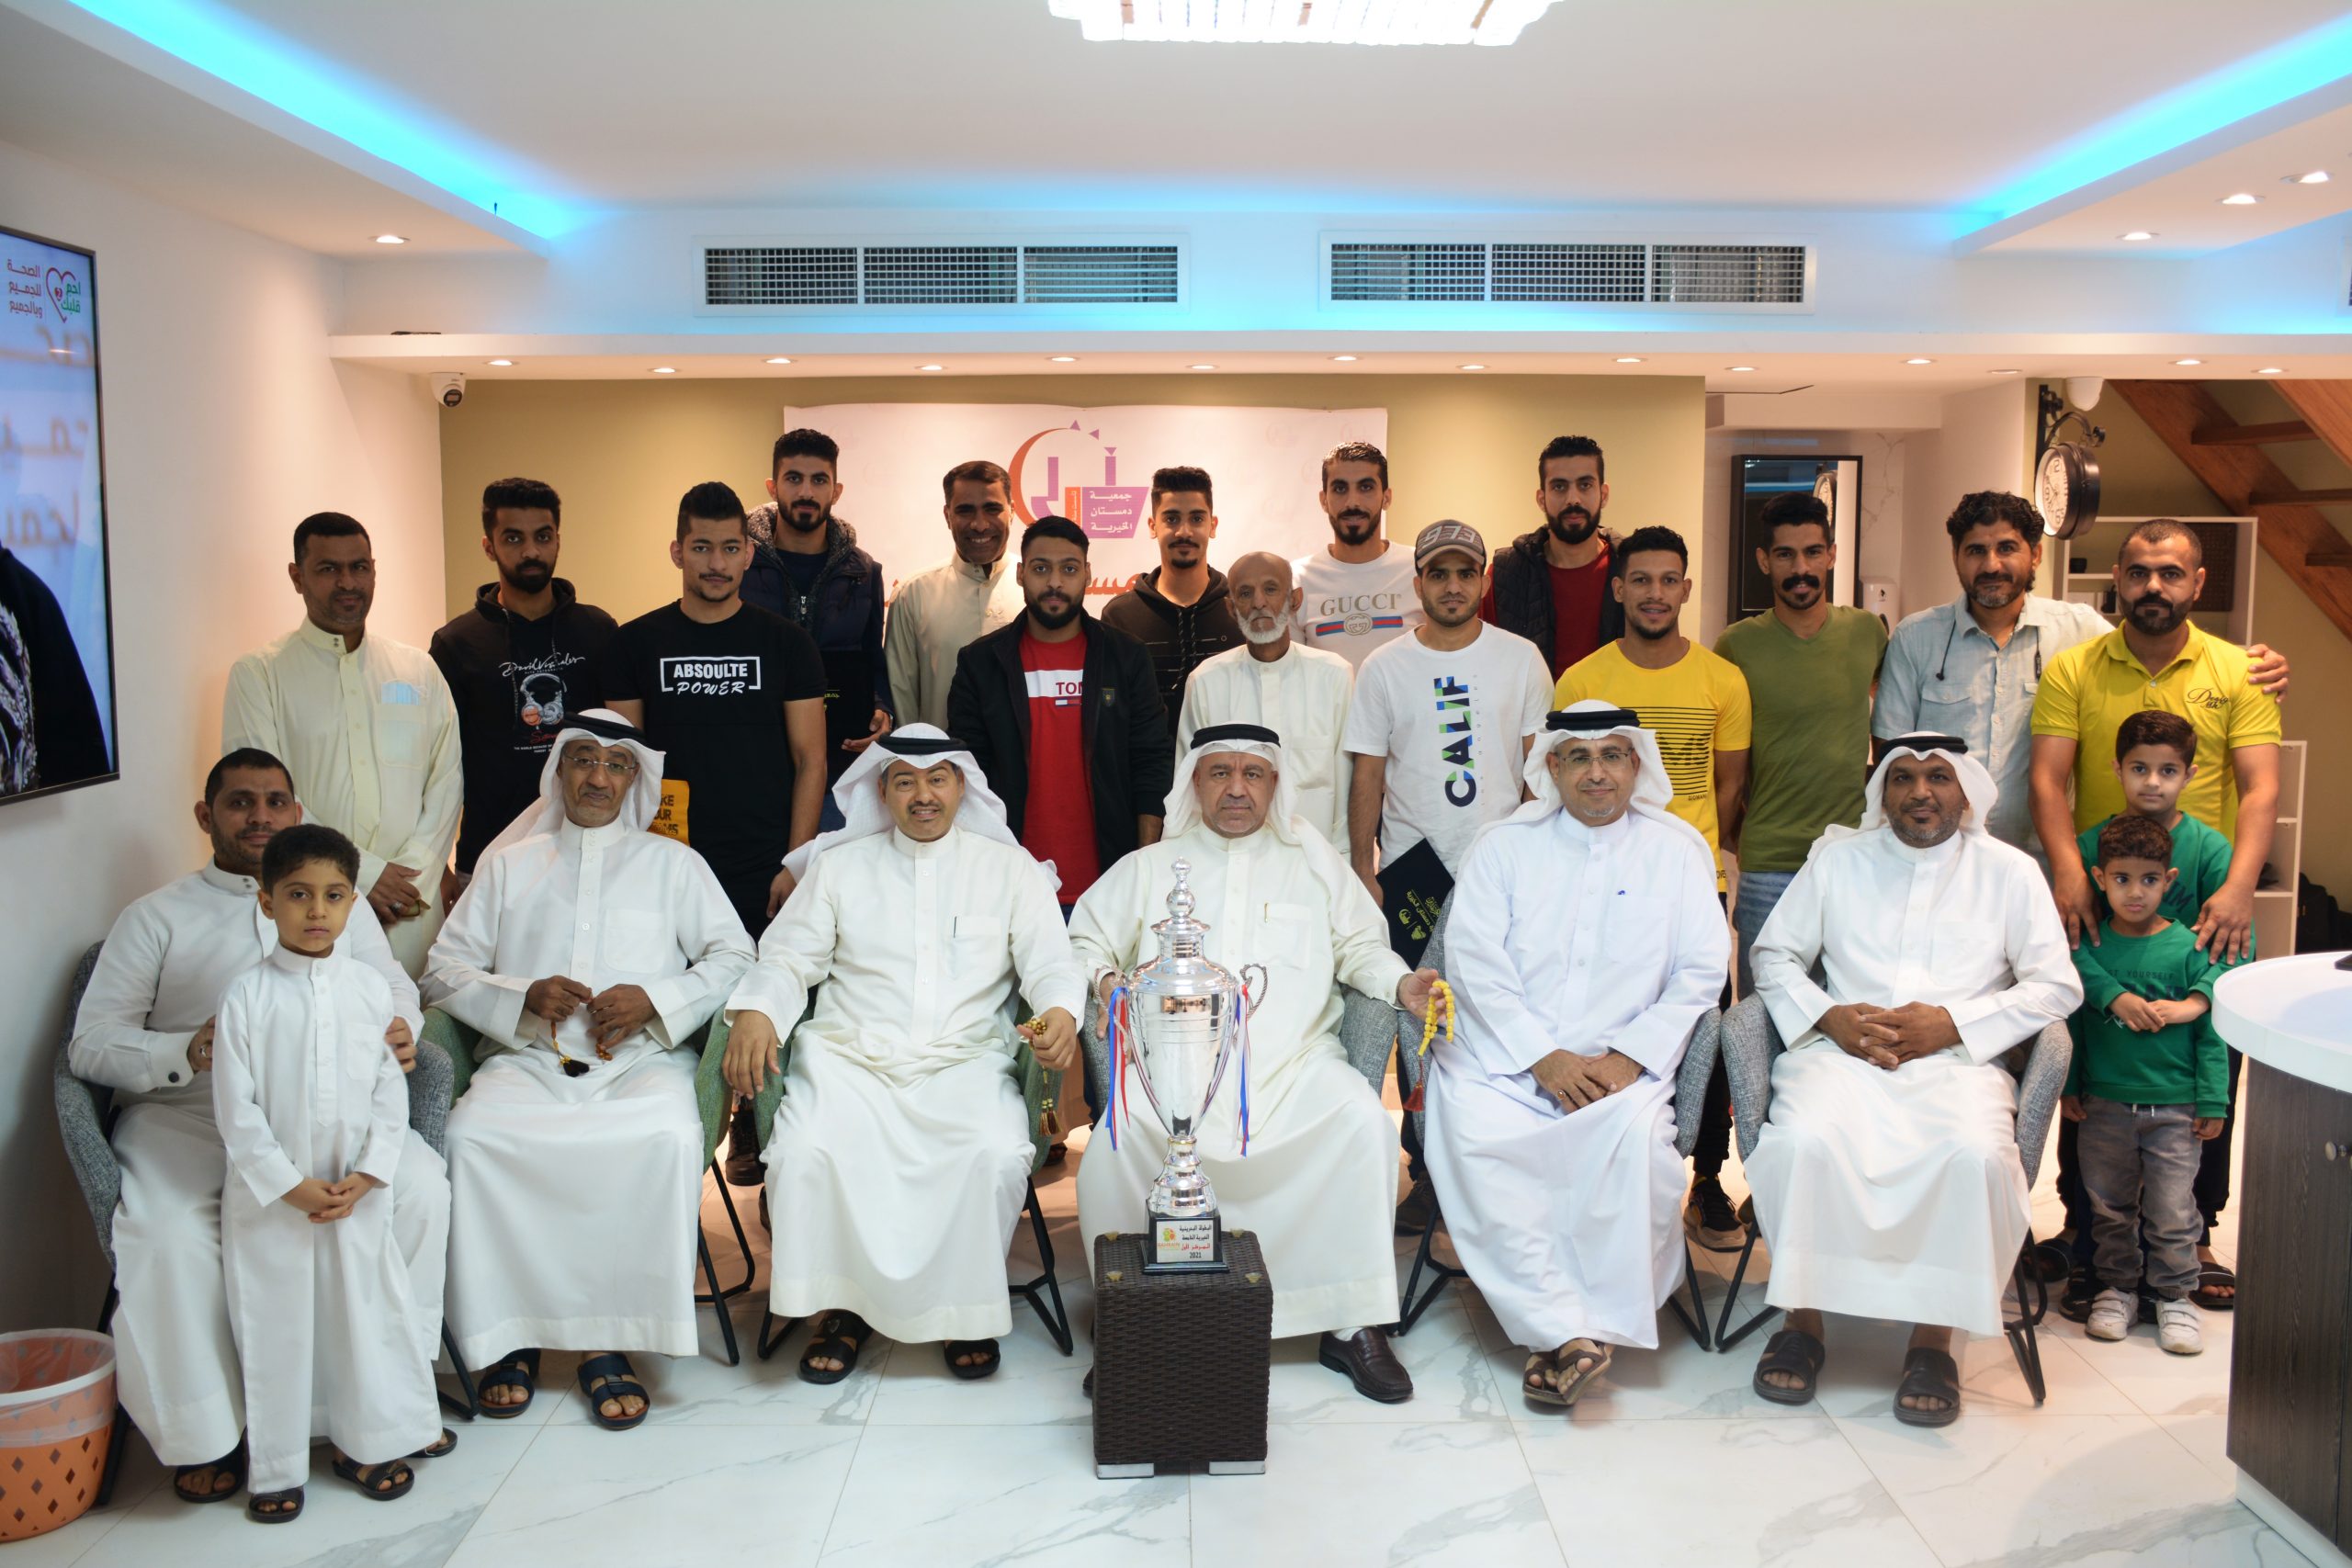 مشاركة إدارة جمعية مدينة عيسى حفل تكريم لاعبي جمعية دمستان لفوزهم بالمركز الأول في البطولة البحرينية الخيرية لكرة القدم